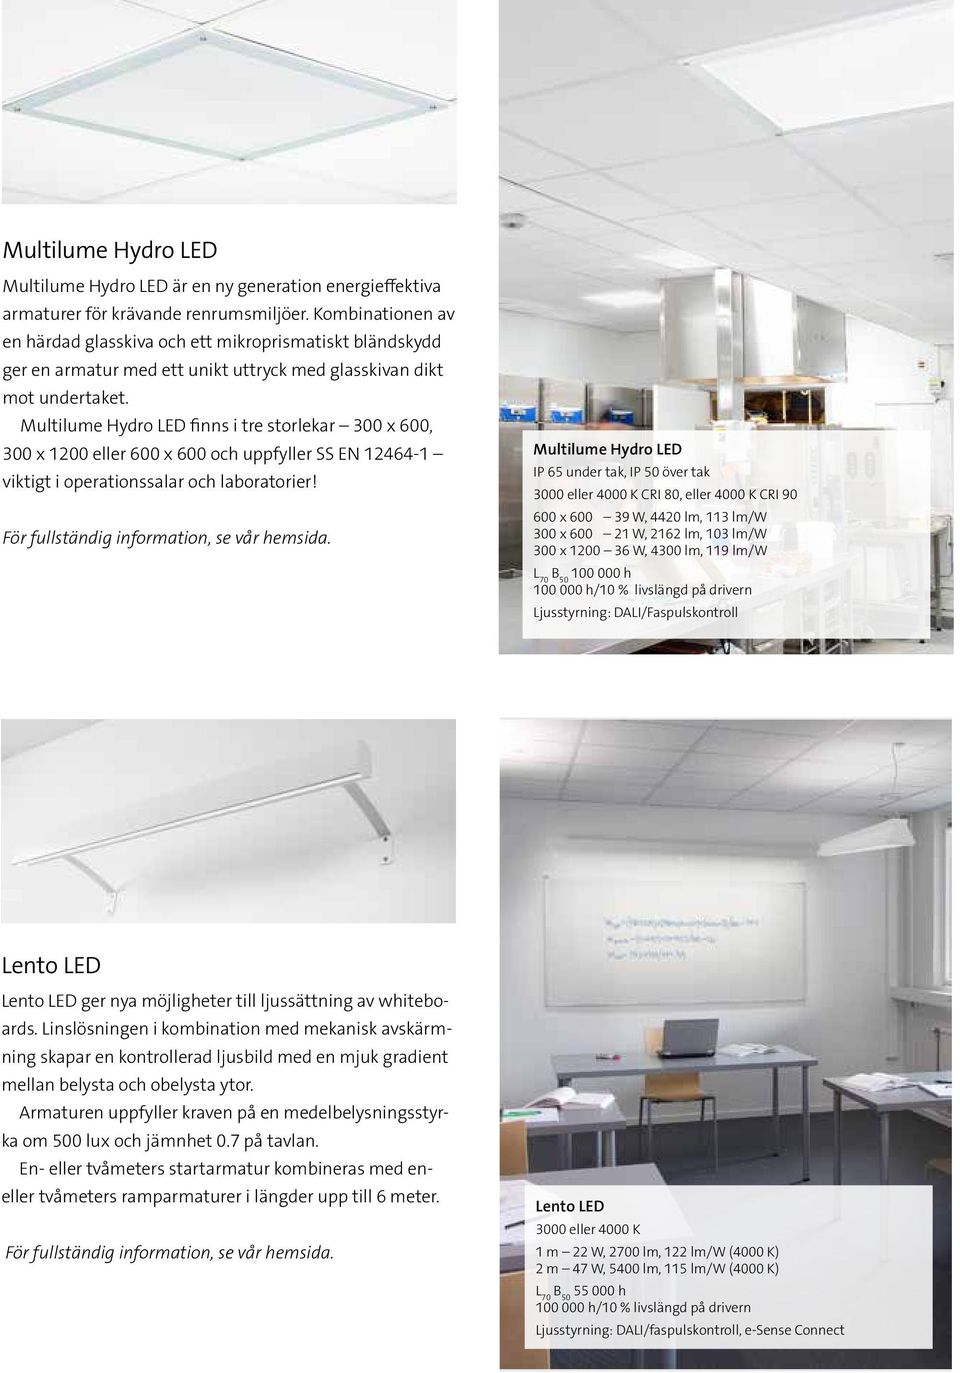 Multilume Hydro LED finns i tre storlekar 300 x 600, 300 x 1200 eller 600 x 600 och uppfyller SS EN 12464-1 viktigt i operationssalar och laboratorier!